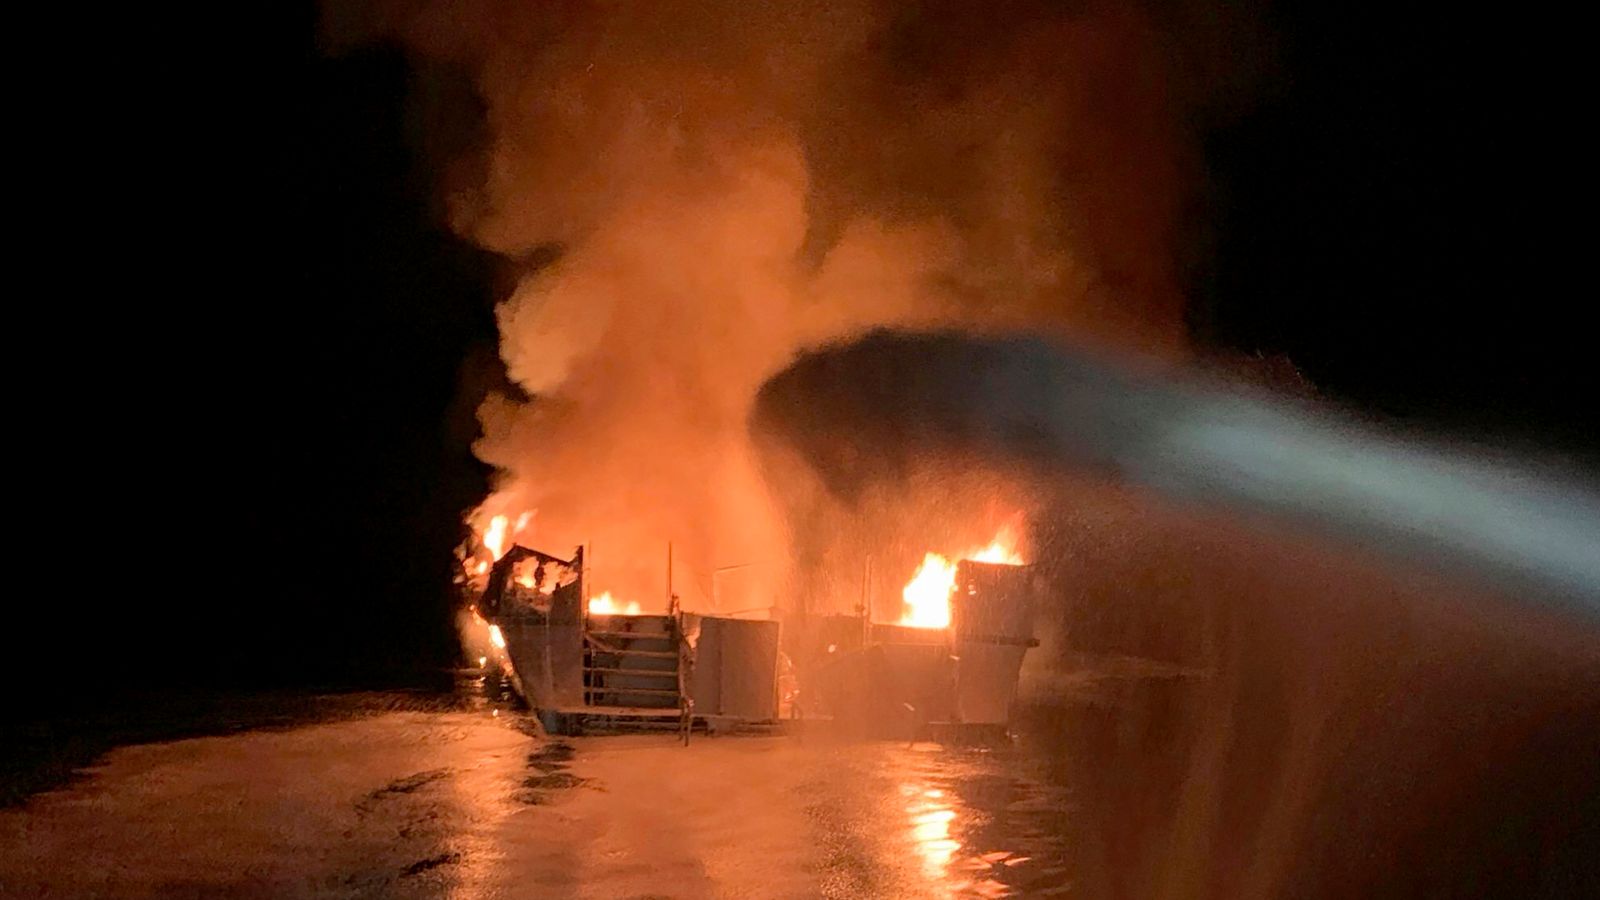 Un capitaine de bateau californien emprisonné pour un incendie qui a tué 34 personnes |  Actualités américaines